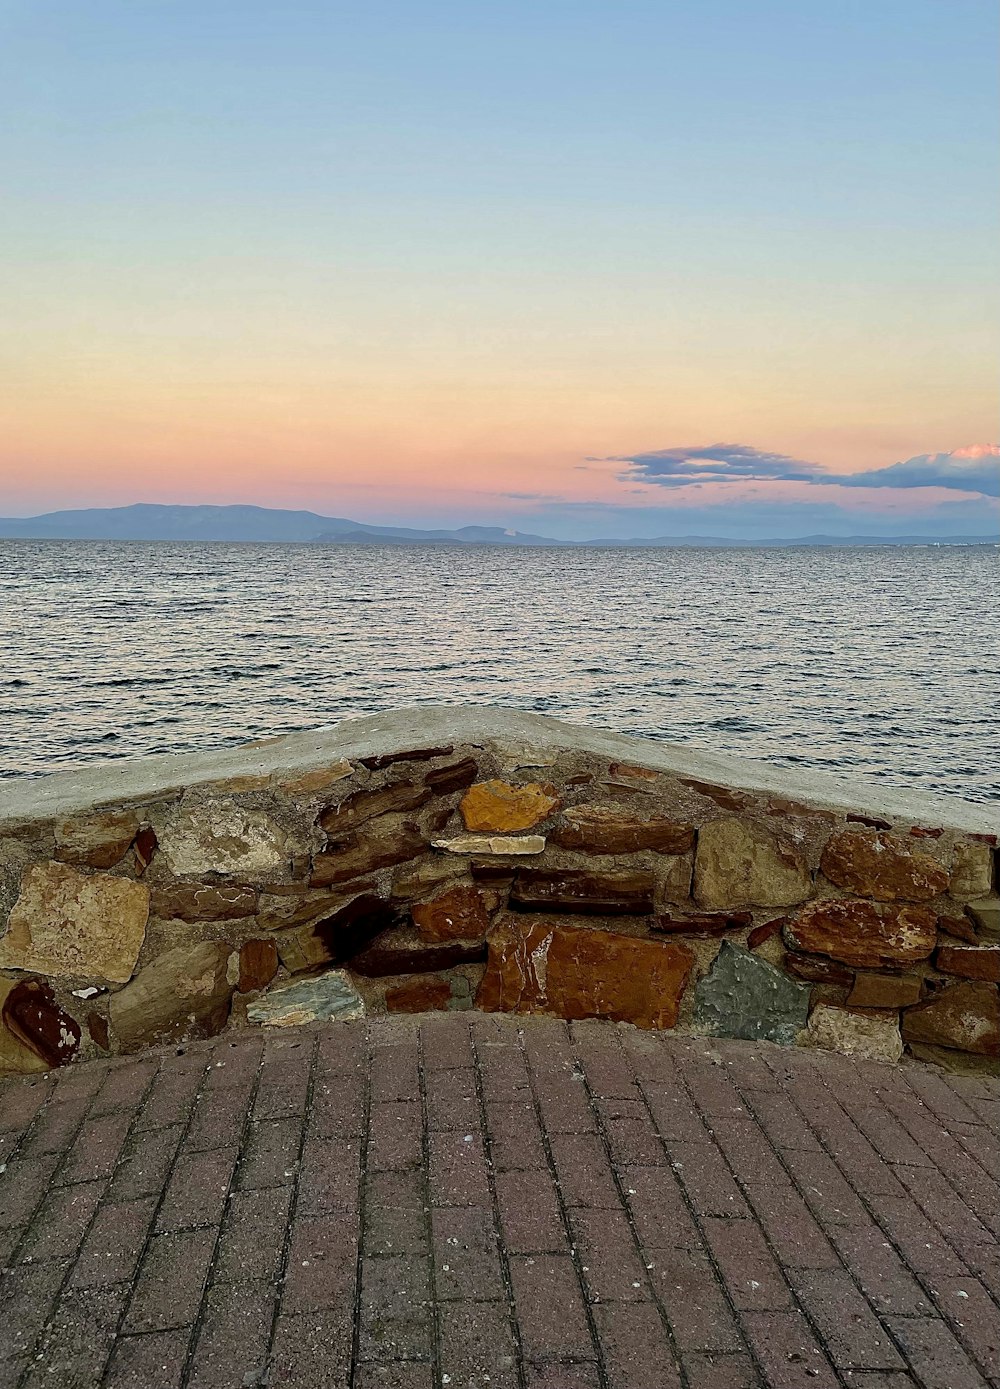 바다 근처의 벽돌 산책로 위에 앉아있는 벤치